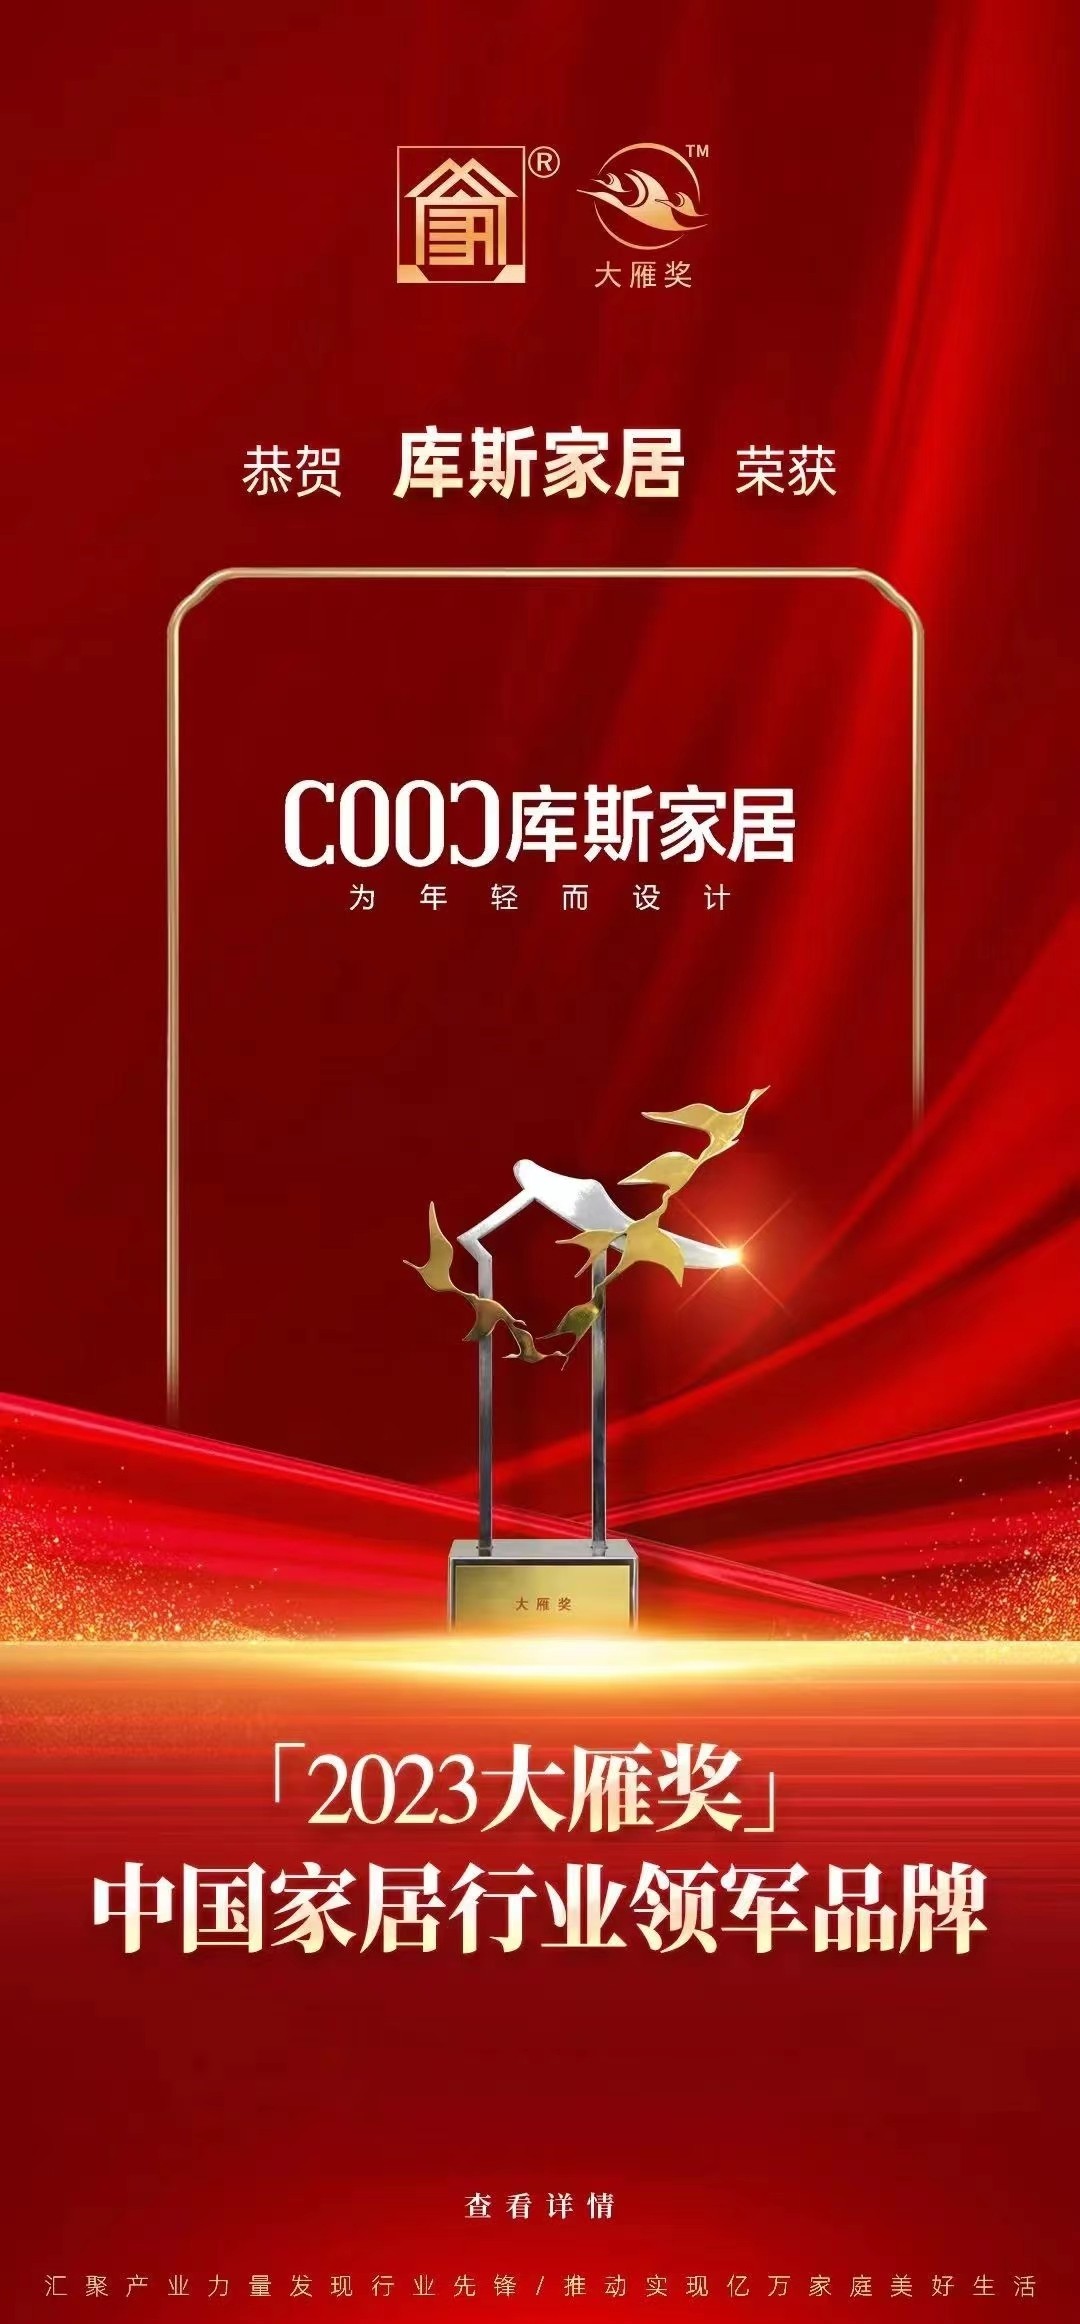 再获殊荣丨库斯家居荣获2023年质量标杆品牌、中国家居行业领军品牌